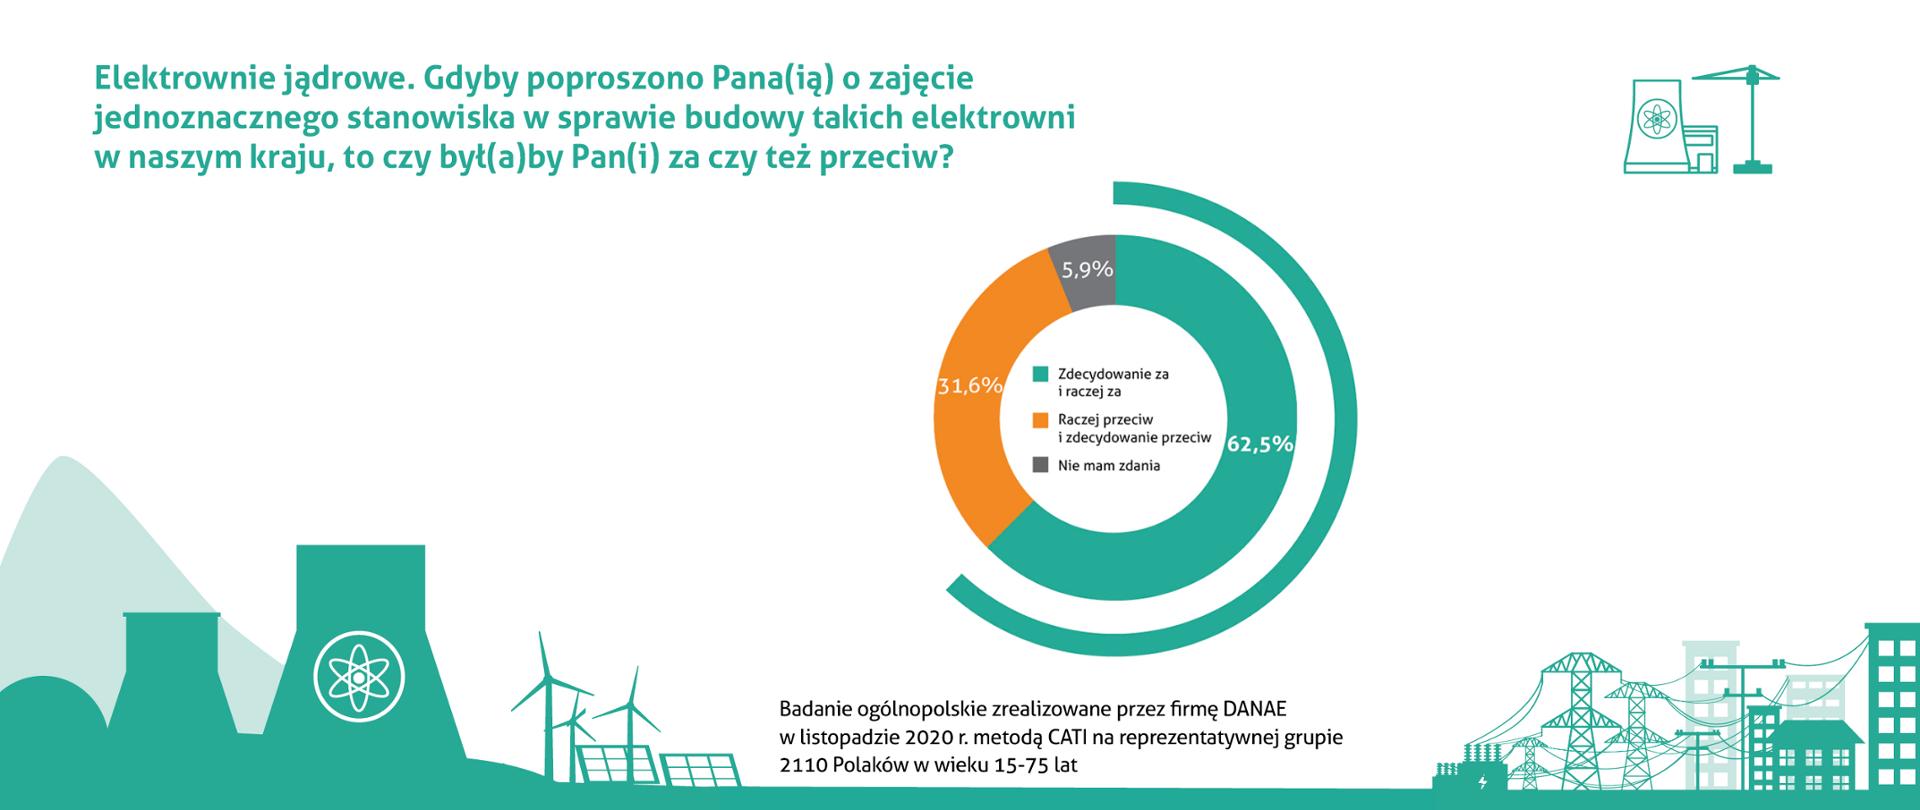 Wykres pokazujący jeden ze slajdów z ogólnopolskiego badanie opinii publicznej zrealizowanego przez firmę DANAE